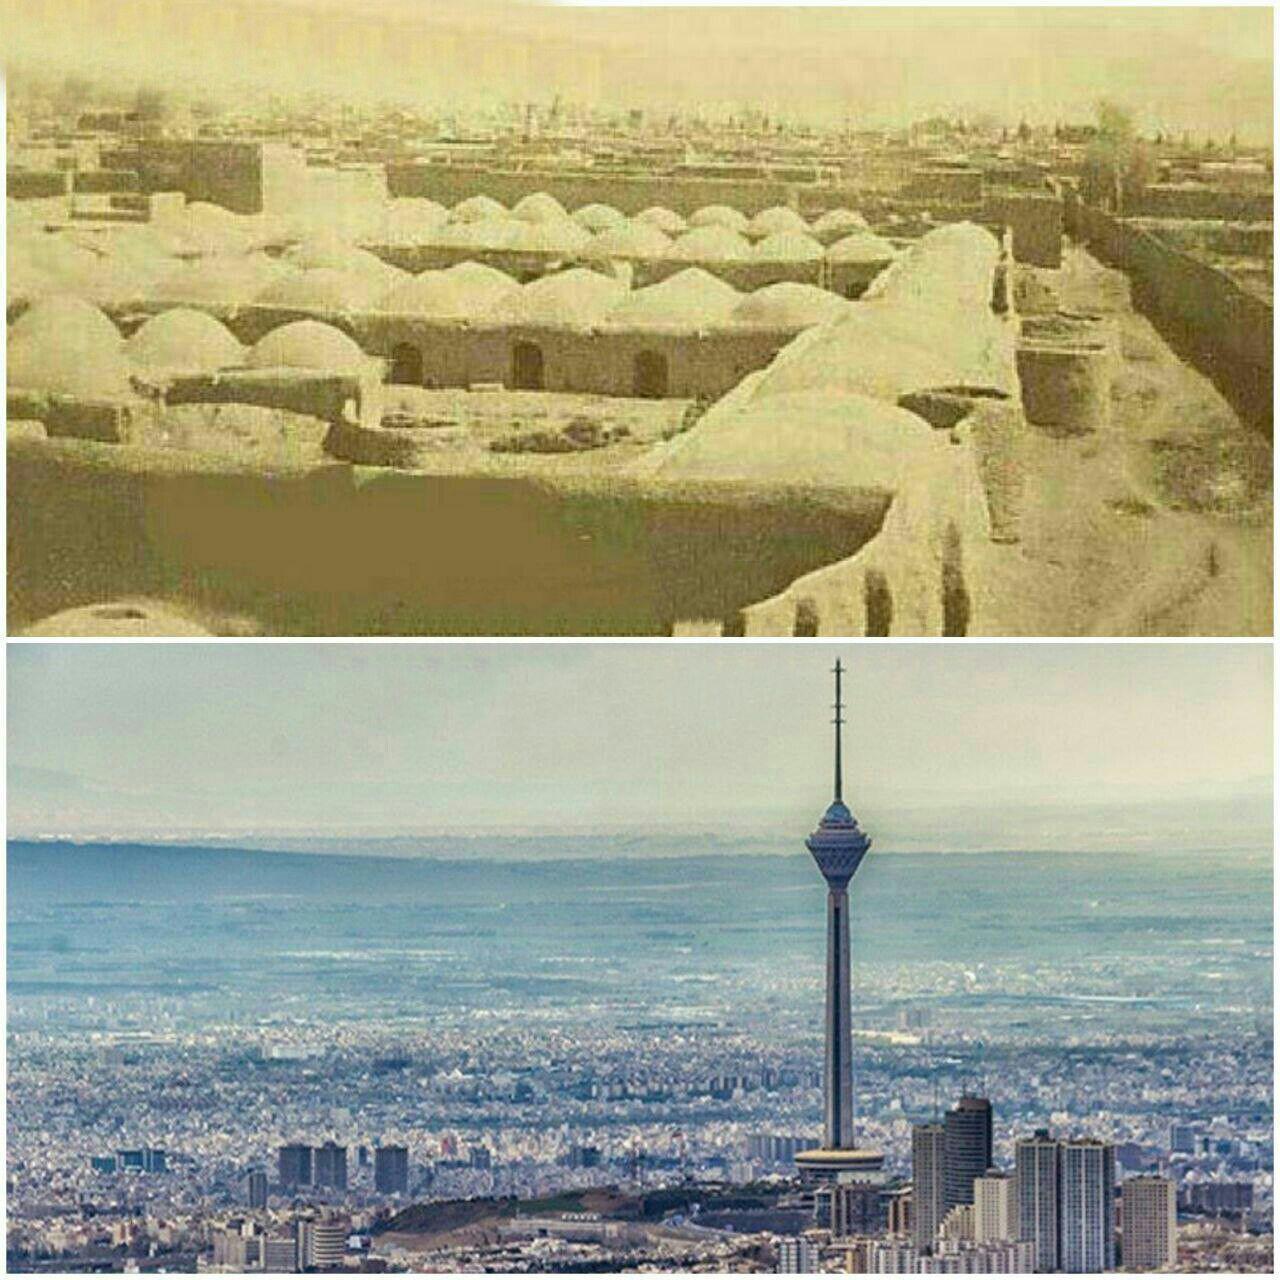 قدیمی ترین عکس موجود از تهران  در ۱۵۰ سال پیش